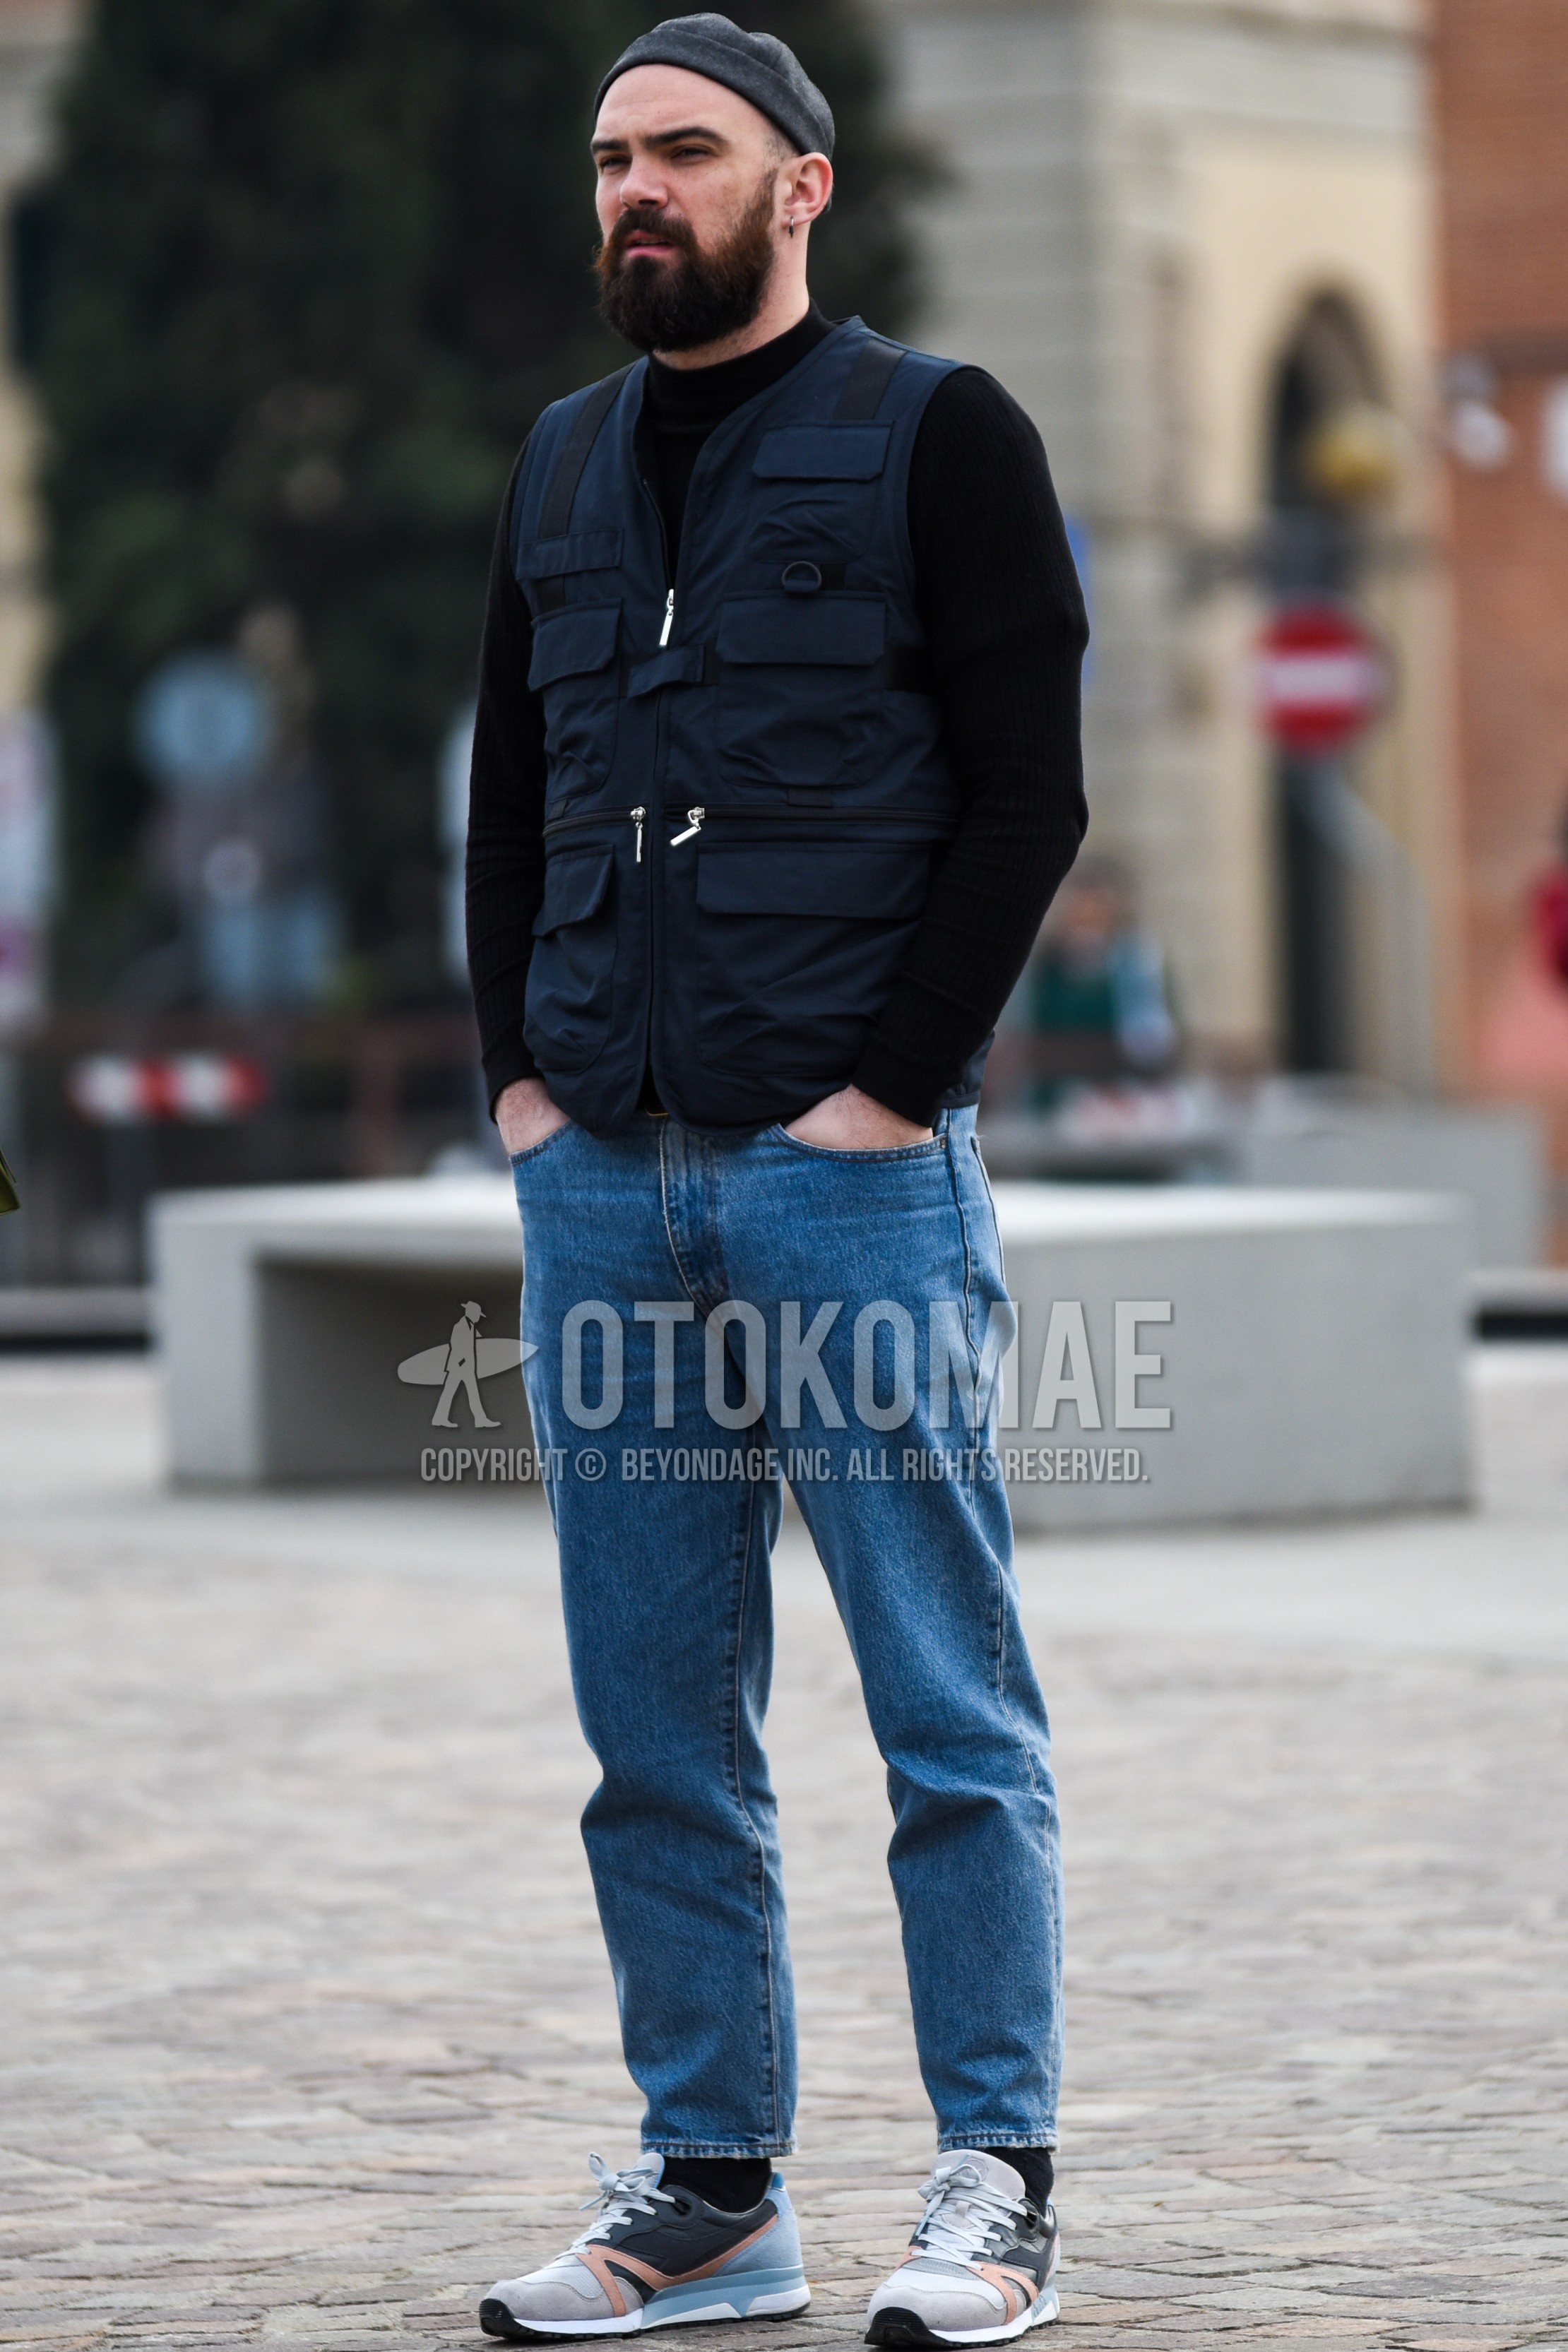 Men's spring autumn outfit with gray plain cap, navy plain casual vest, black plain sweater, blue plain denim/jeans, black plain socks, gray low-cut sneakers.